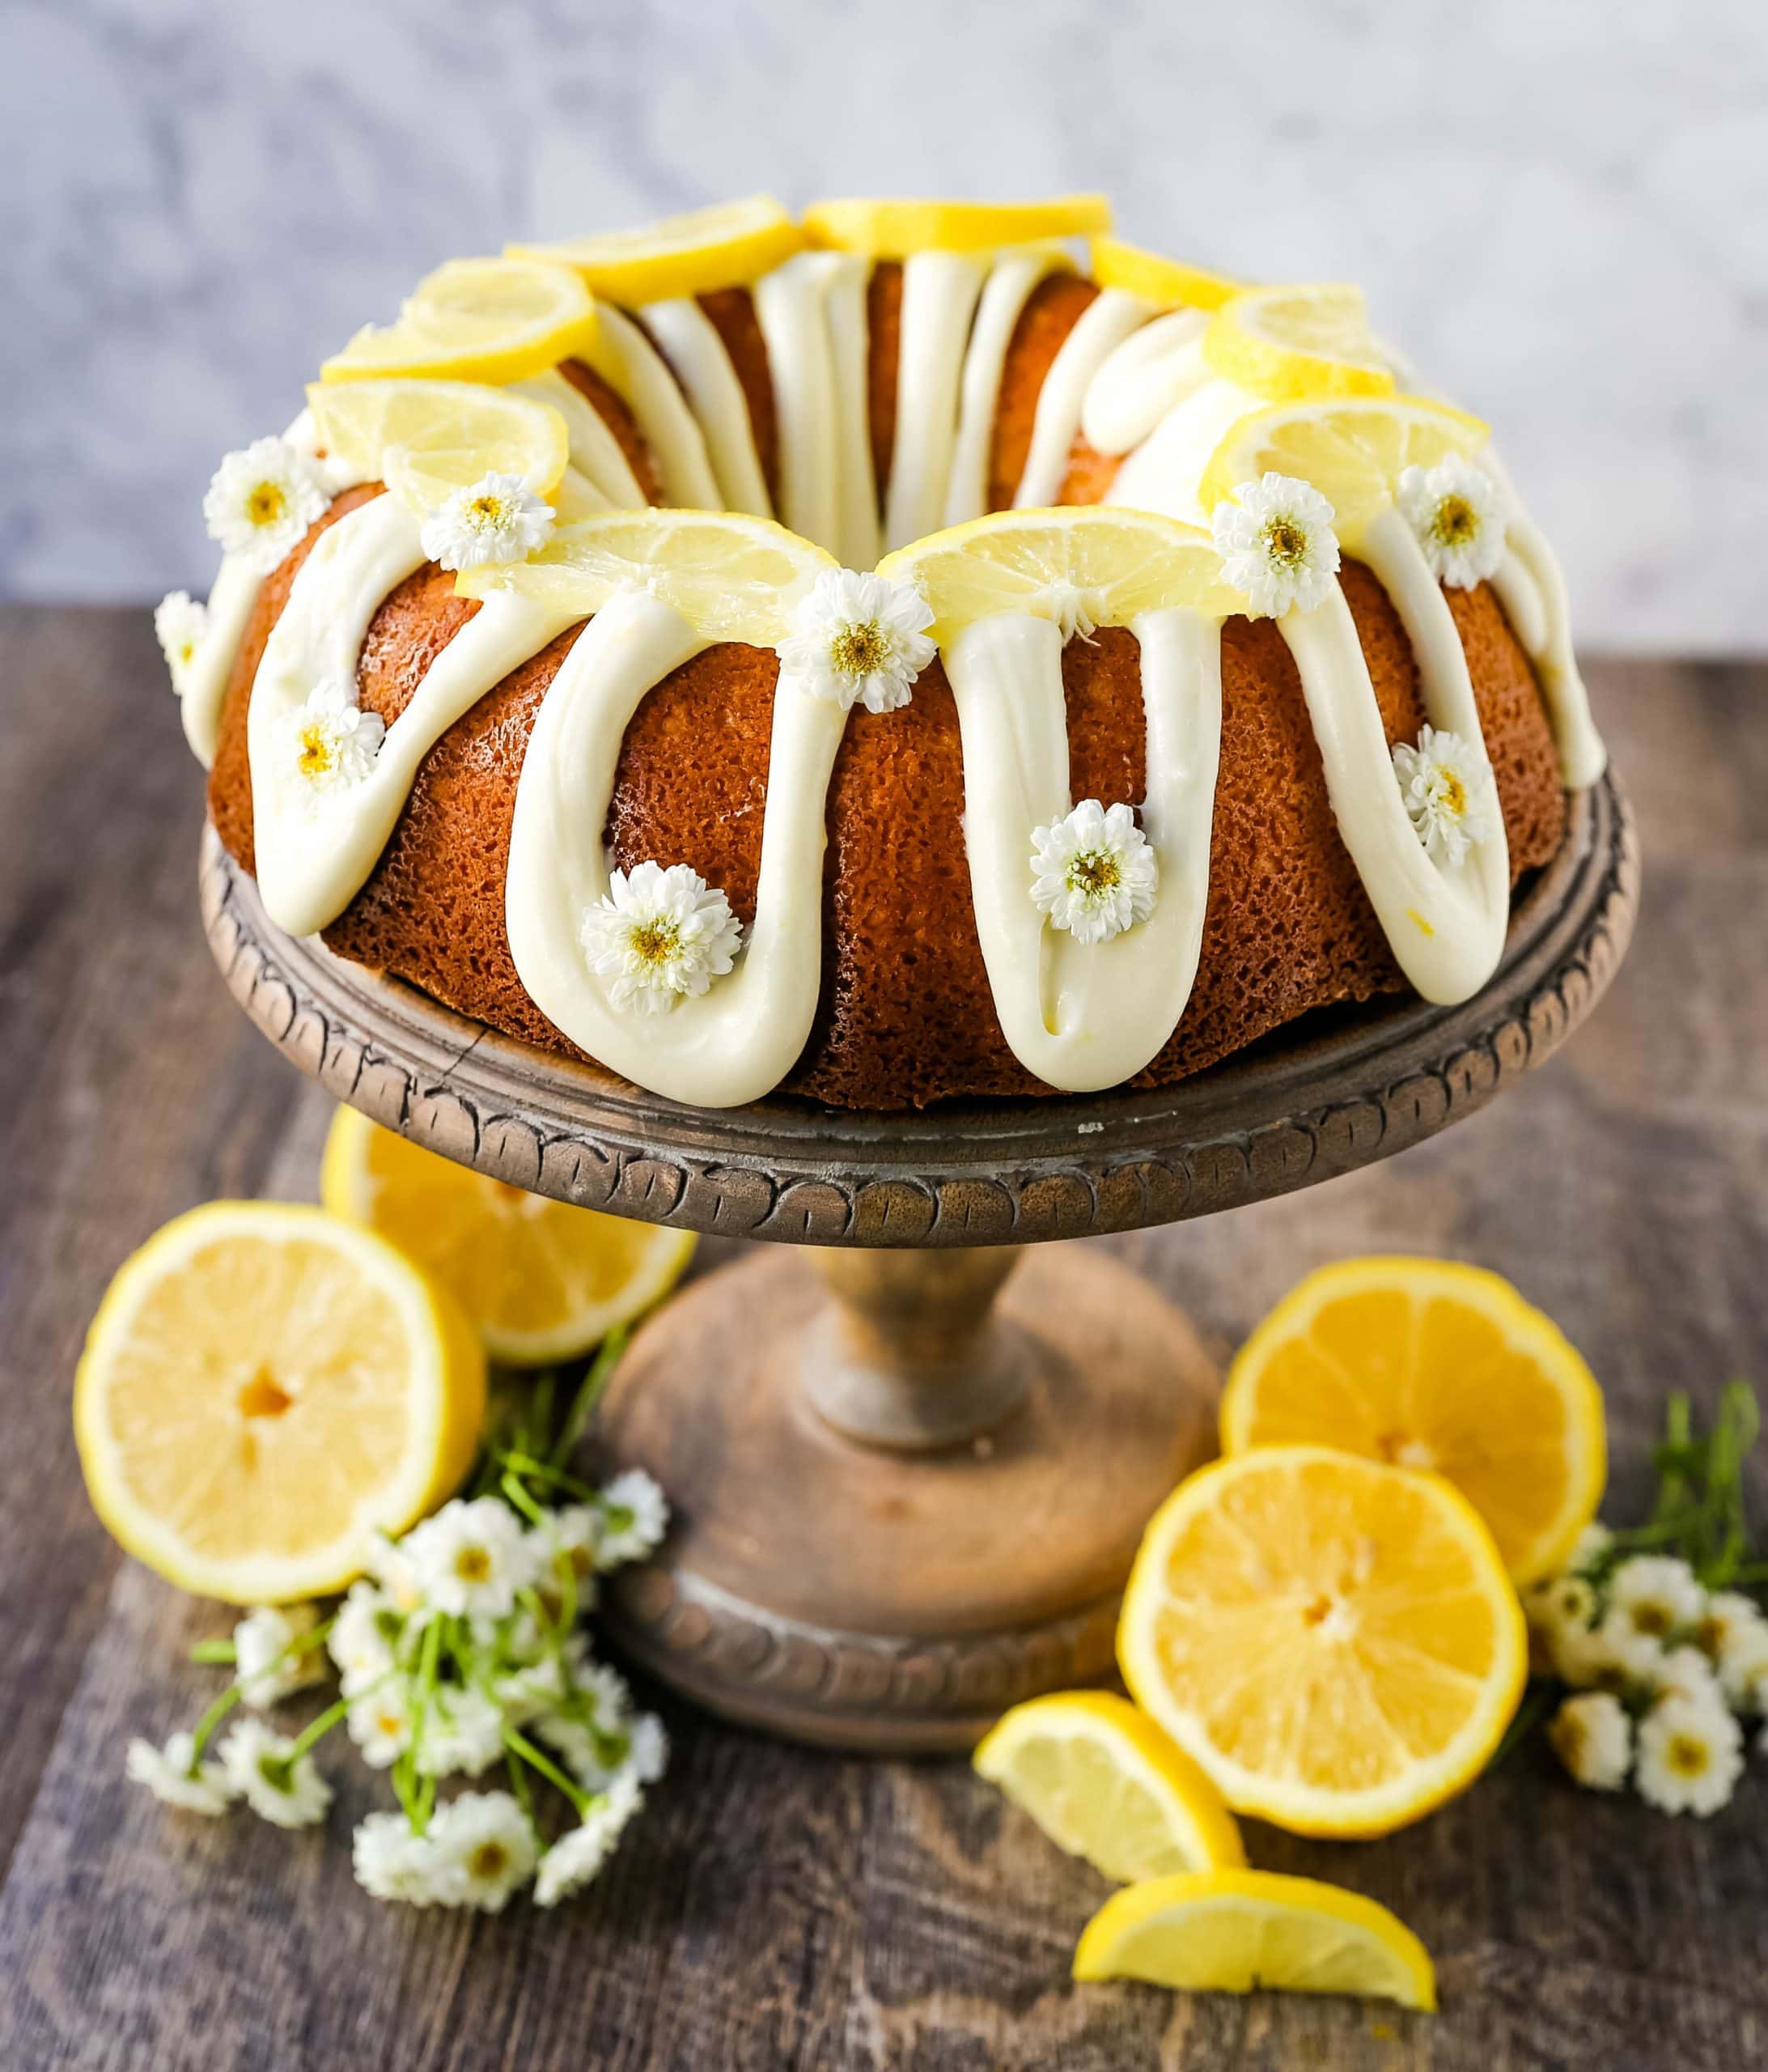 Lemon Bundt Cake. Moist, flavorful lemon bundt cake with a fresh cream cheese lemon glaze. Tips and tricks for making the perfect lemon bundt cake. www.modernhoney.com #lemoncake #lemonbundtcake #bundtcake #cake